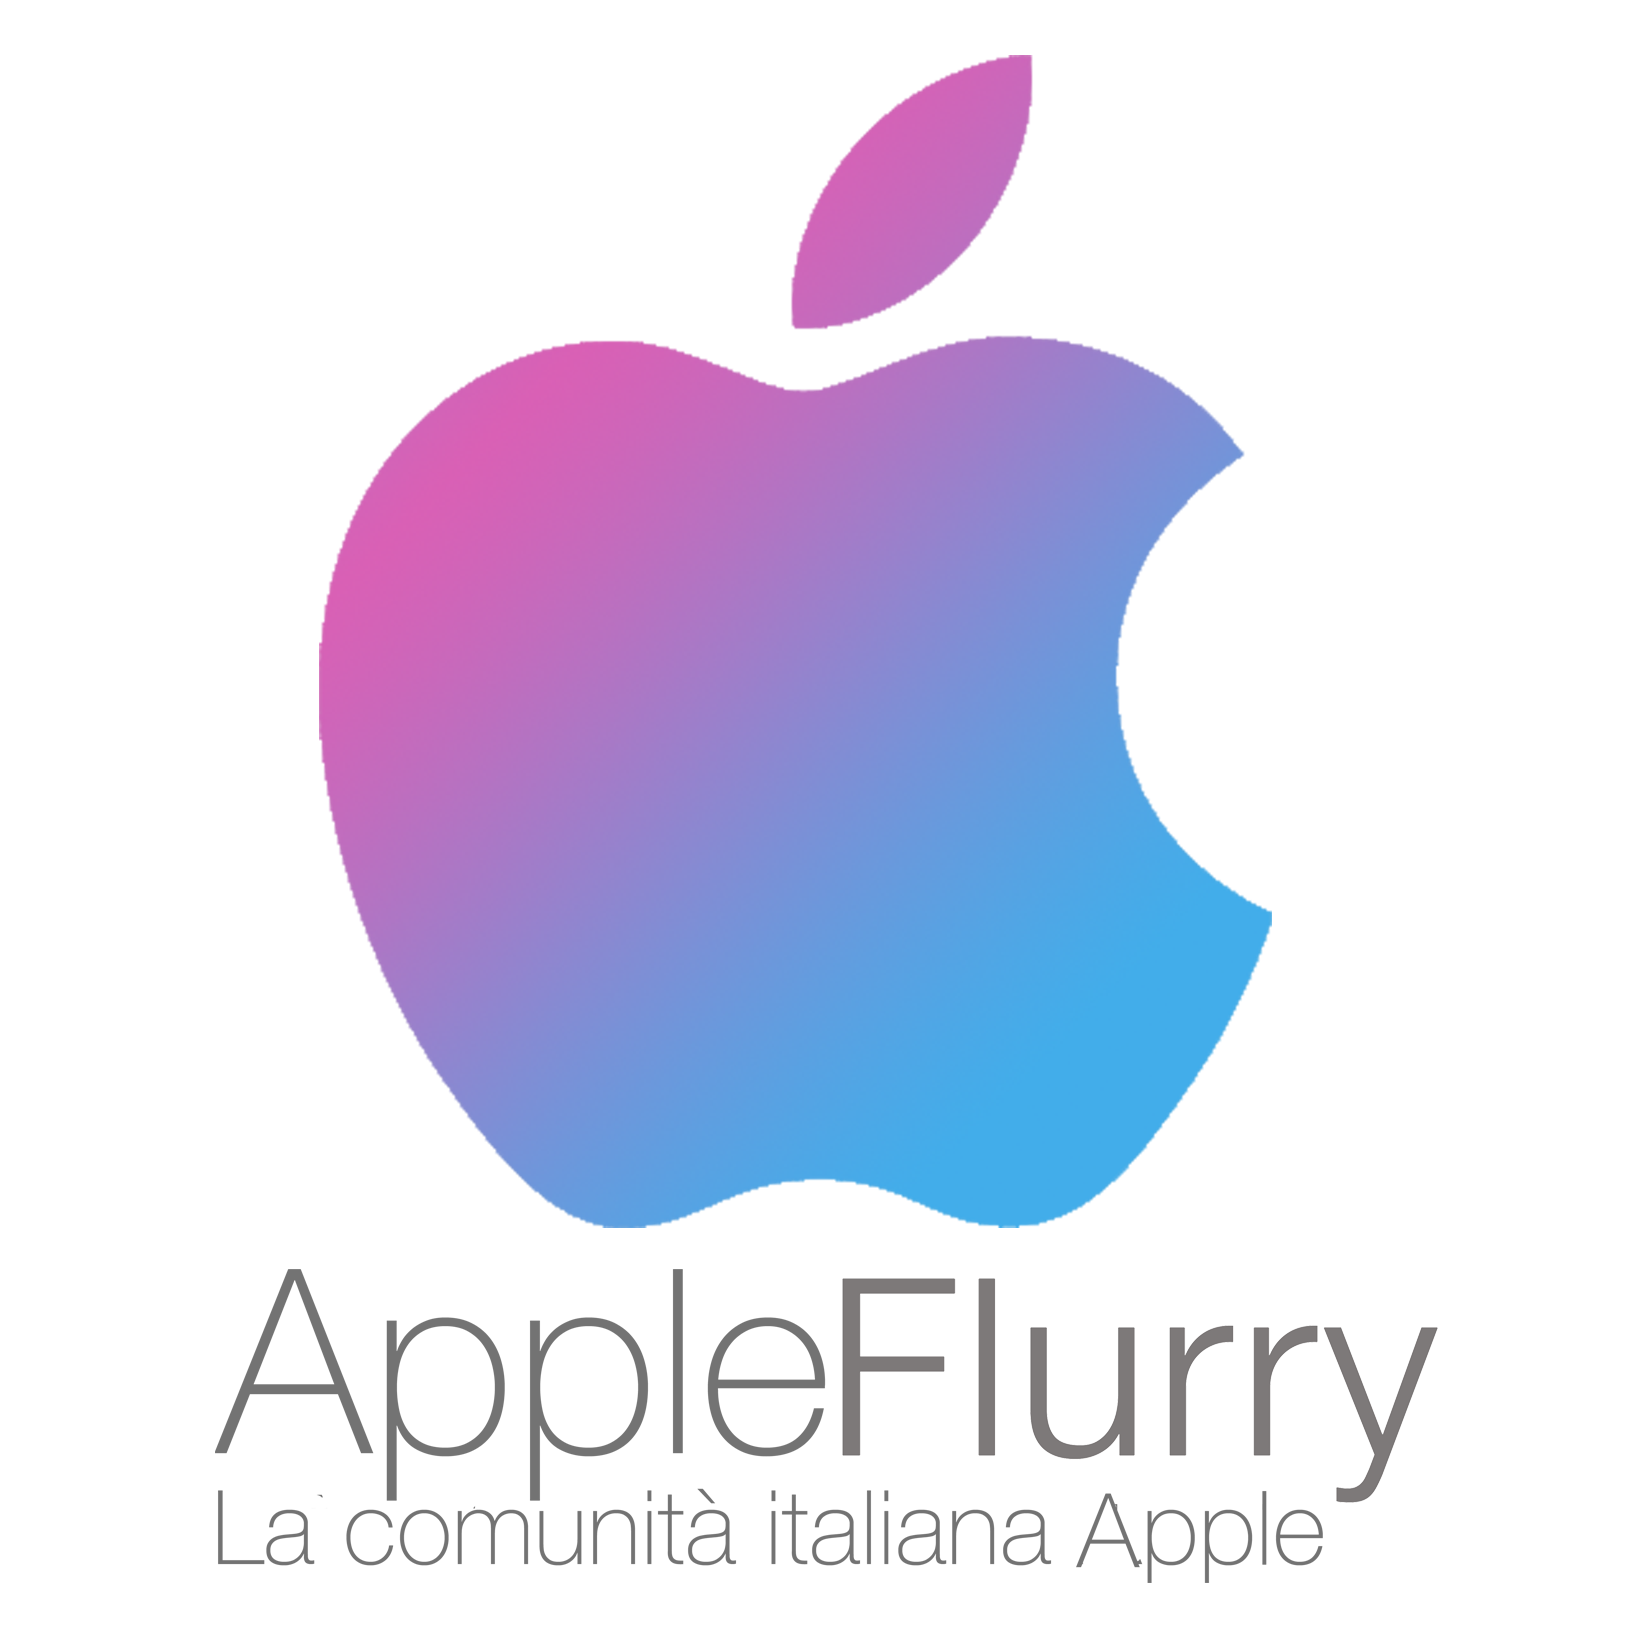 http://t.co/rlGbZKmba9 - La comunità italiana Apple.

In network con @MondoBlackBerry e @WindowsFlurry